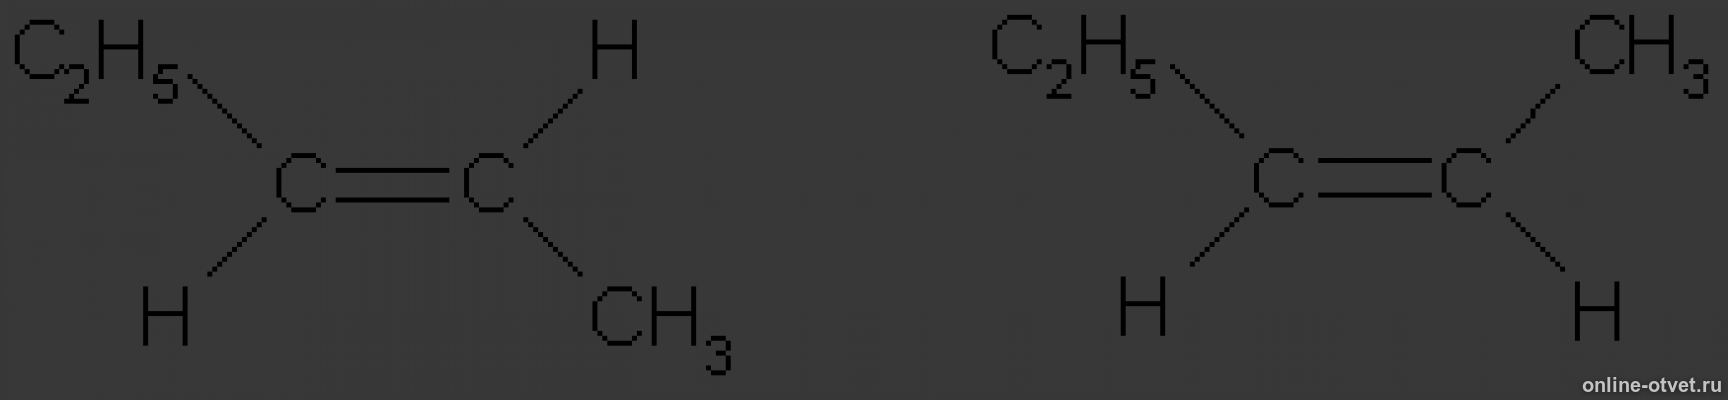 Изомерия гексен 2. Цис пентен 2. Цис пентен 2 формула. Транс пентен 2 структурная формула. 3 3 Диметил бутен 1 цис и транс изомерия.